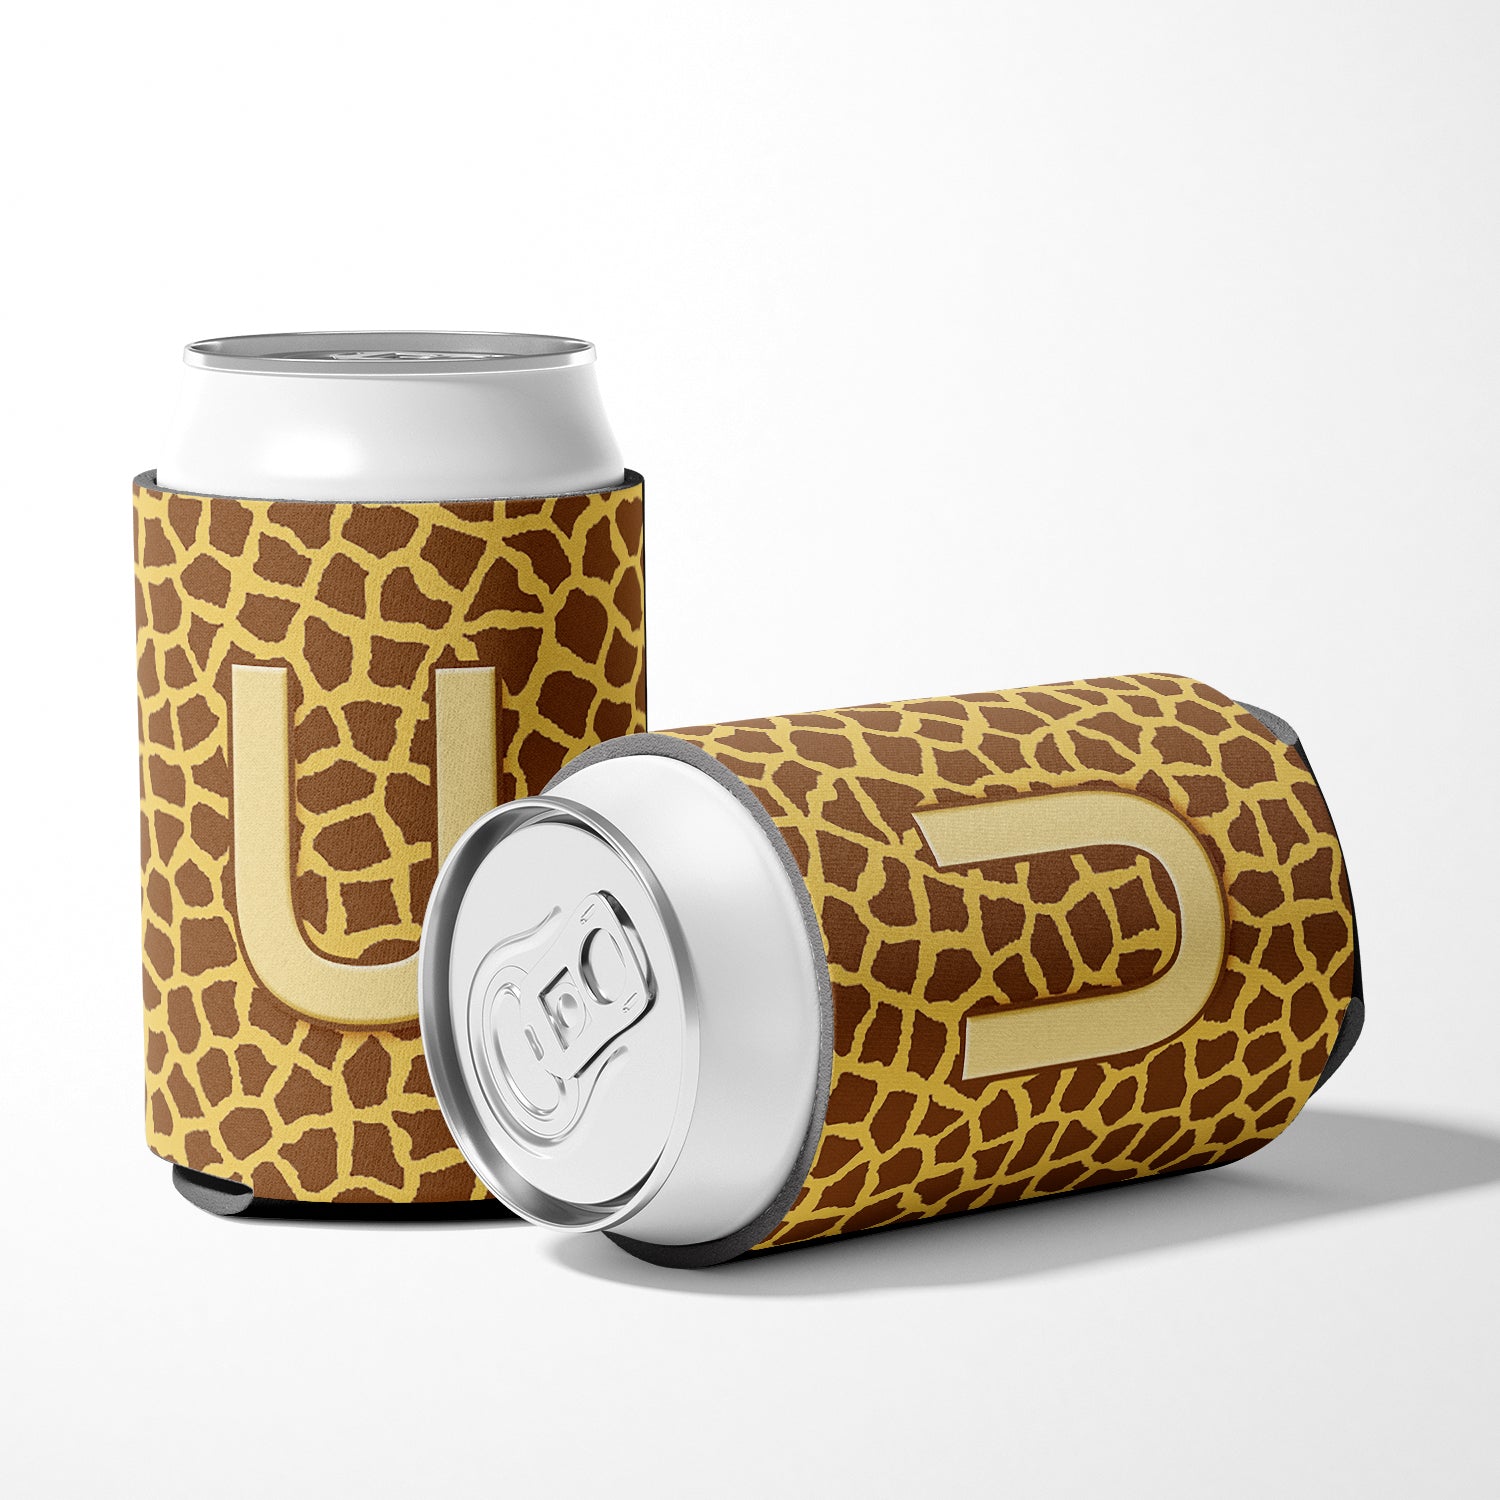 Letter U Initial Monogram - Giraffe Can or Bottle Beverage Insulator Hugger.